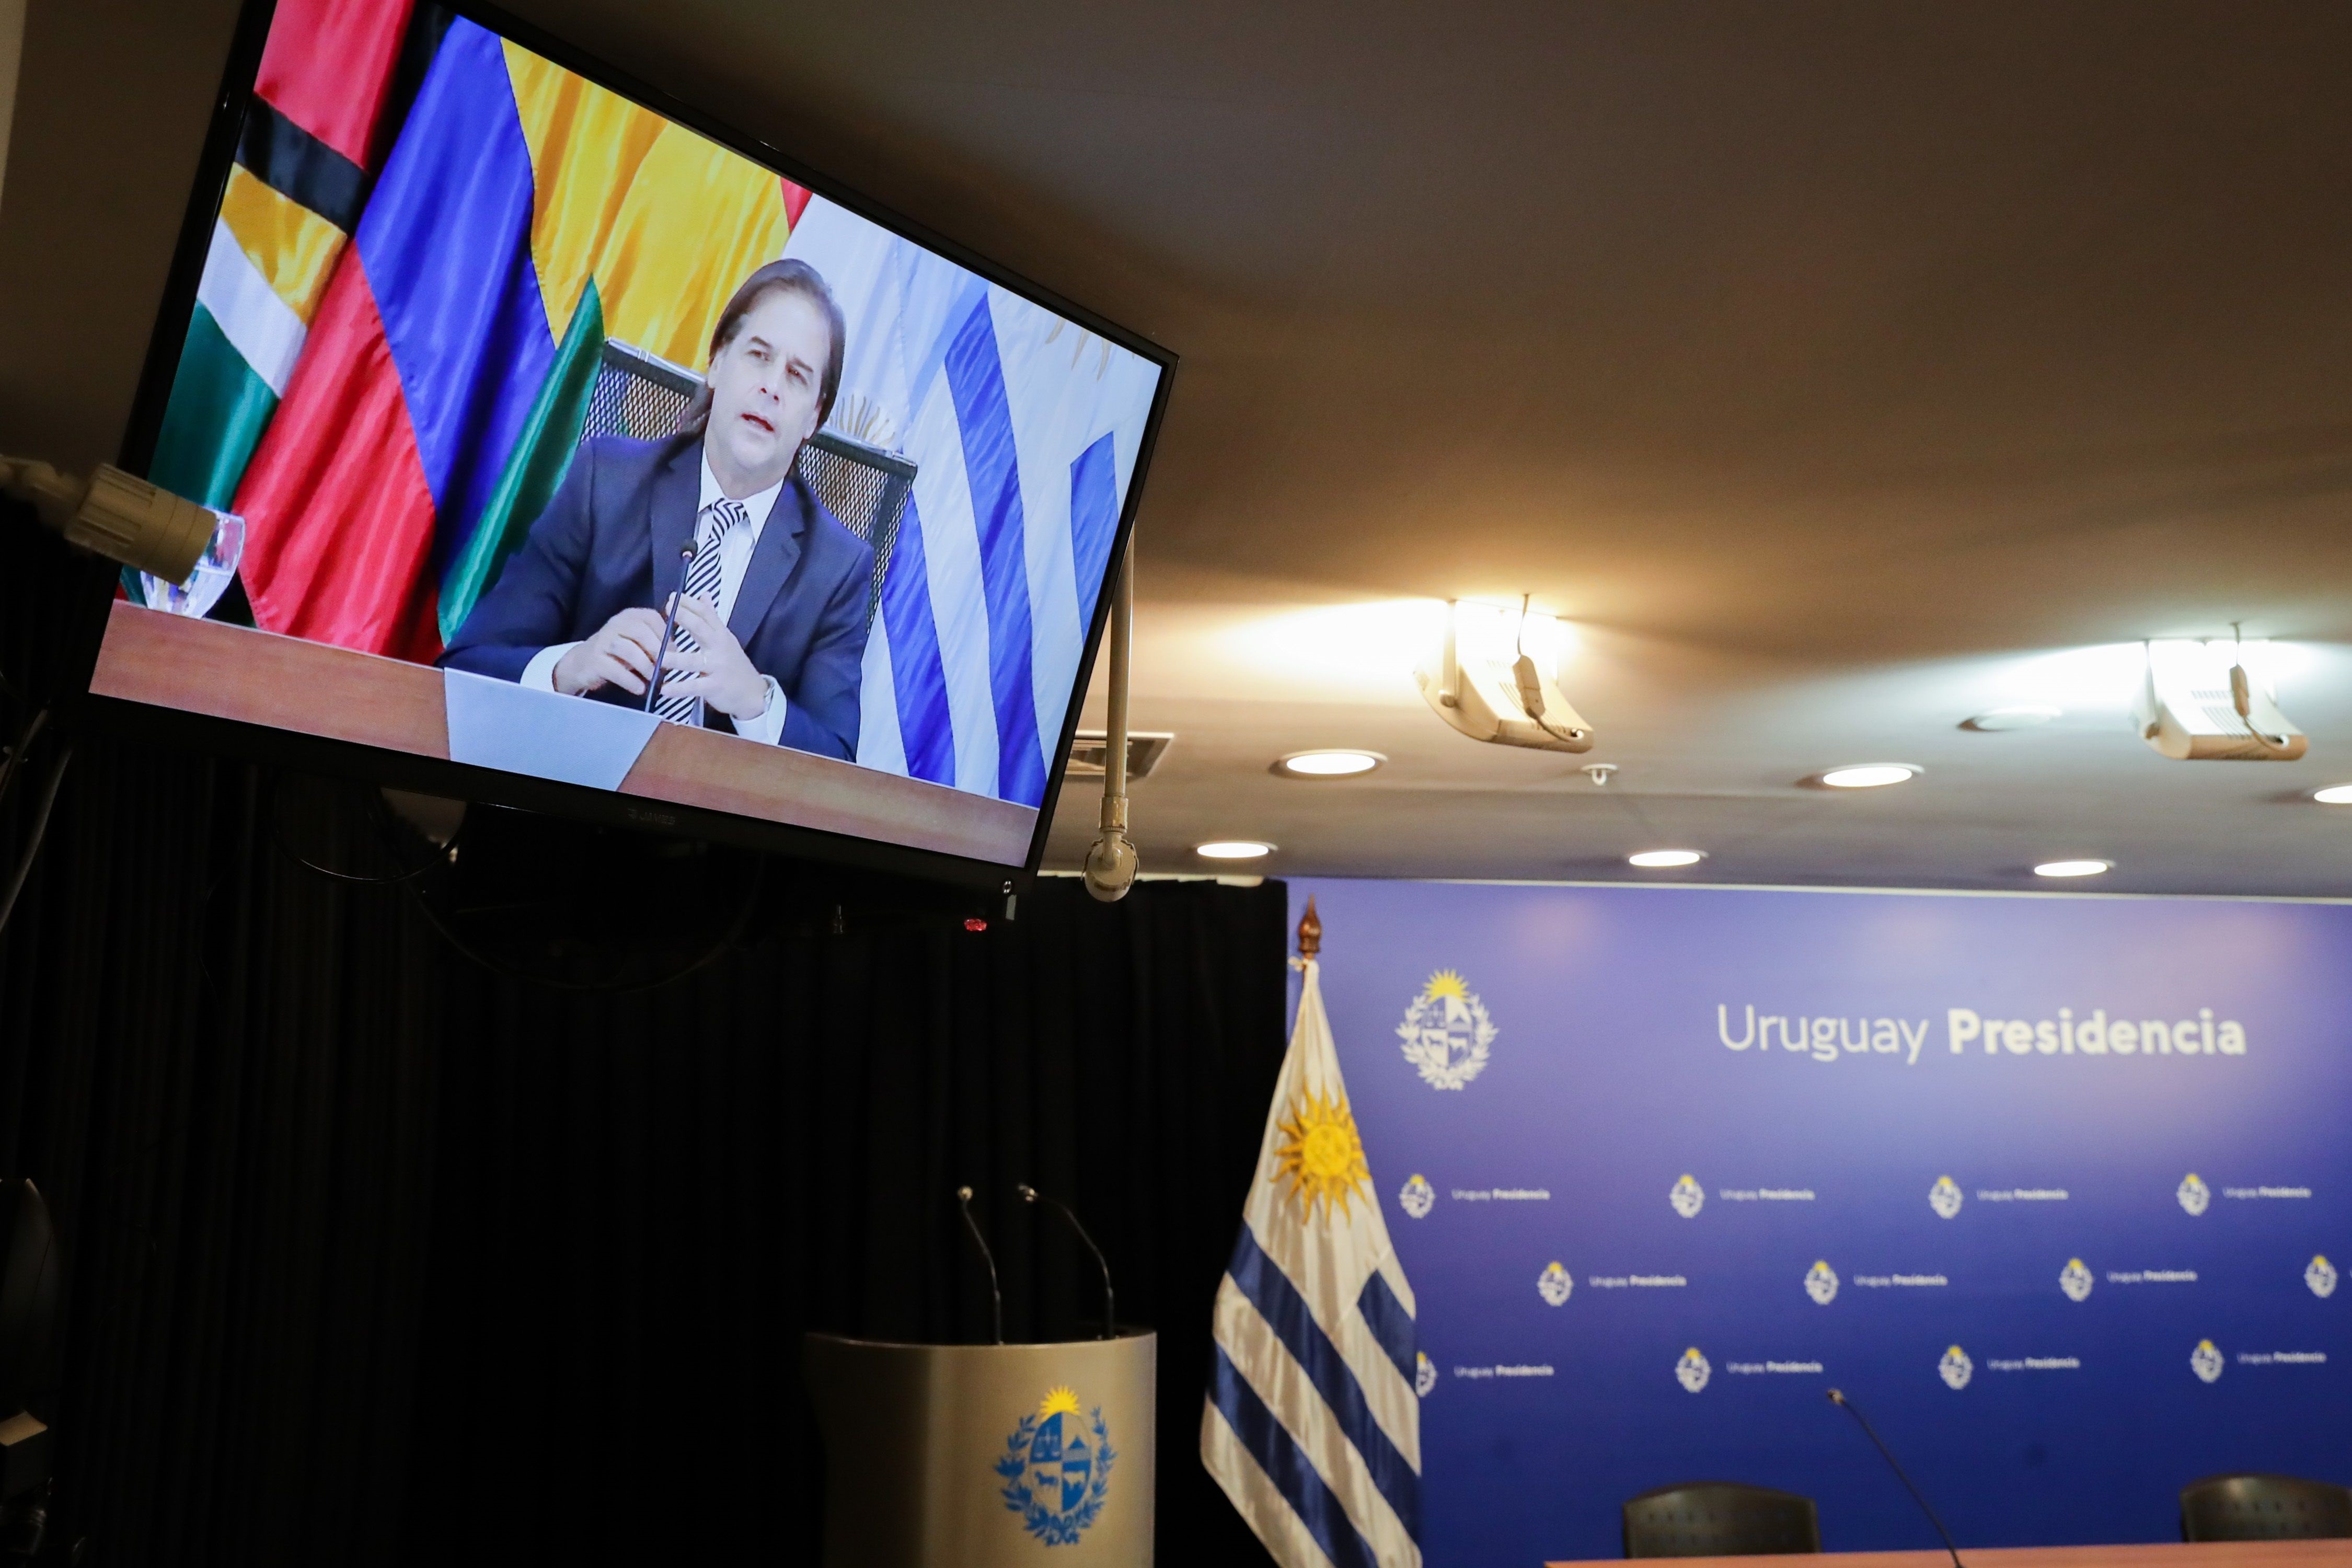 Fotografía de un televisor que muestra al presidente de Uruguay, Luis Lacalle Pou, durante su intervención en la LVII Reunión Ordinaria del Consejo del Mercado Común (CMC) hoy, en Montevideo (Uruguay) (EFE/ Raúl Martínez)
